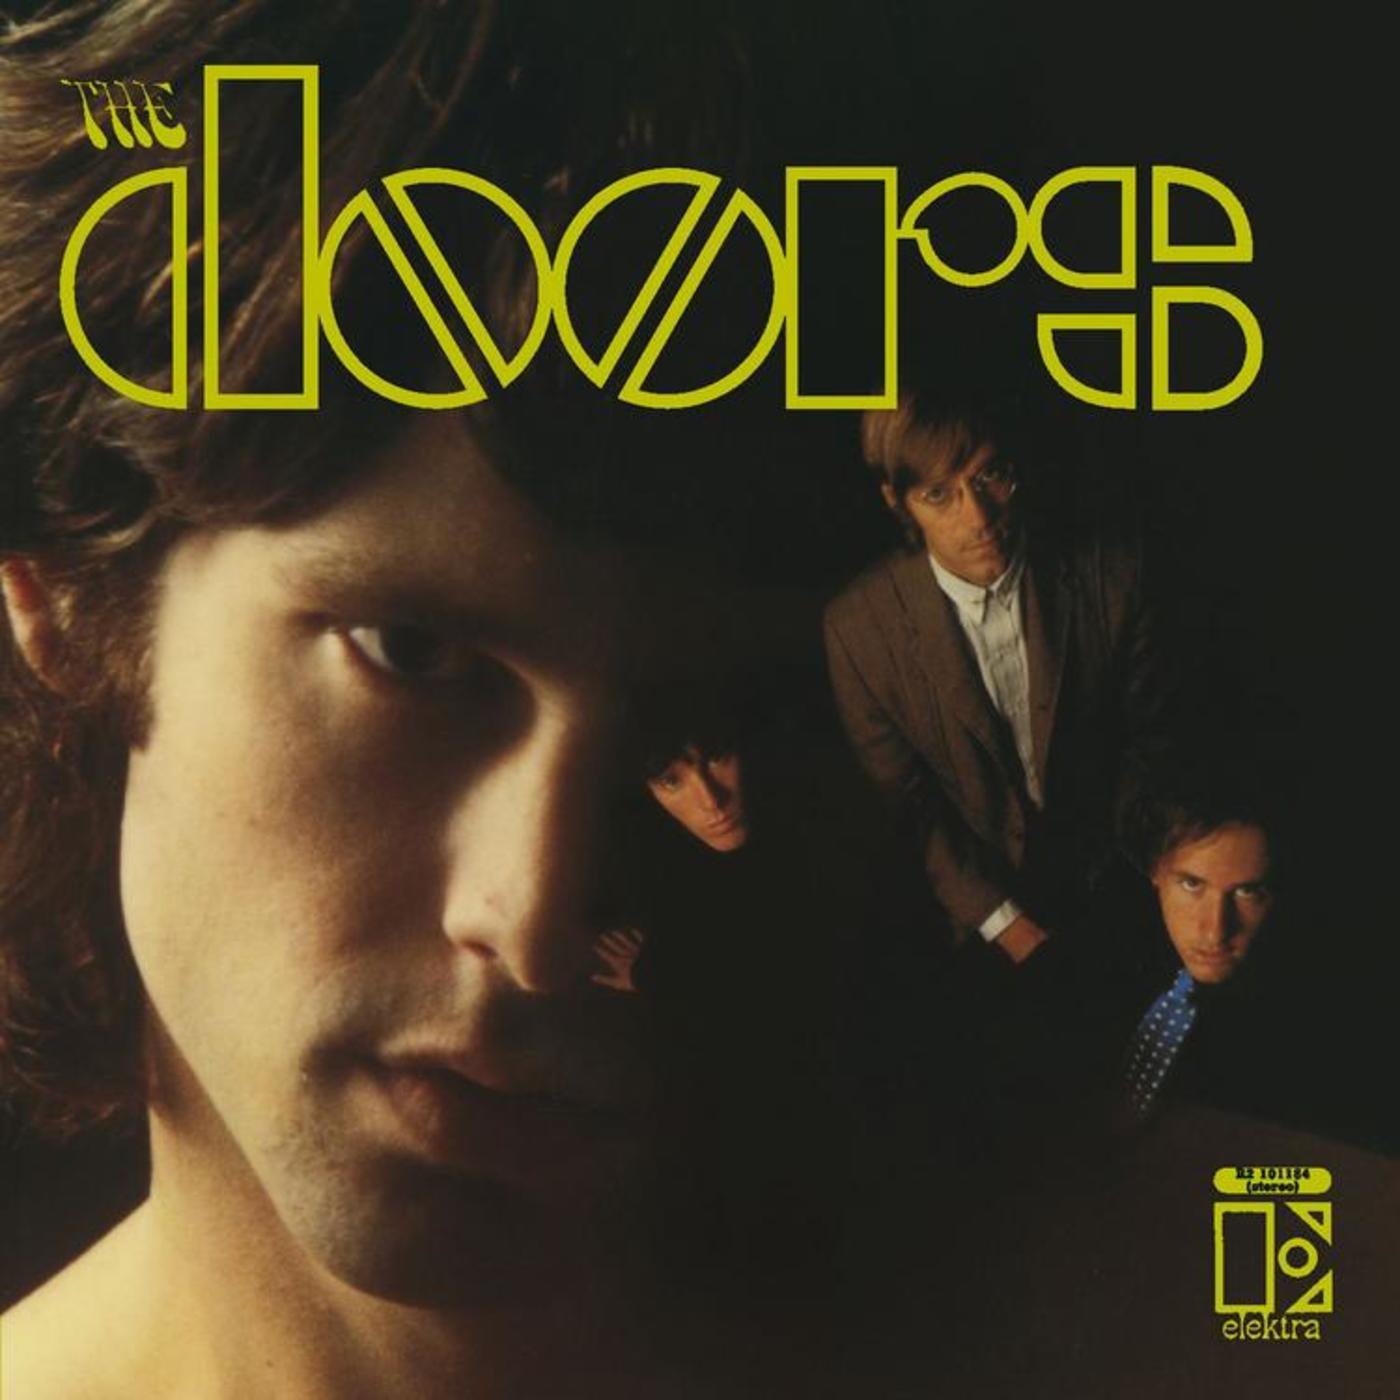 THE DOORS - The Doors (Remastered Original Stereo Mixes) - LP - 180g Vinyl